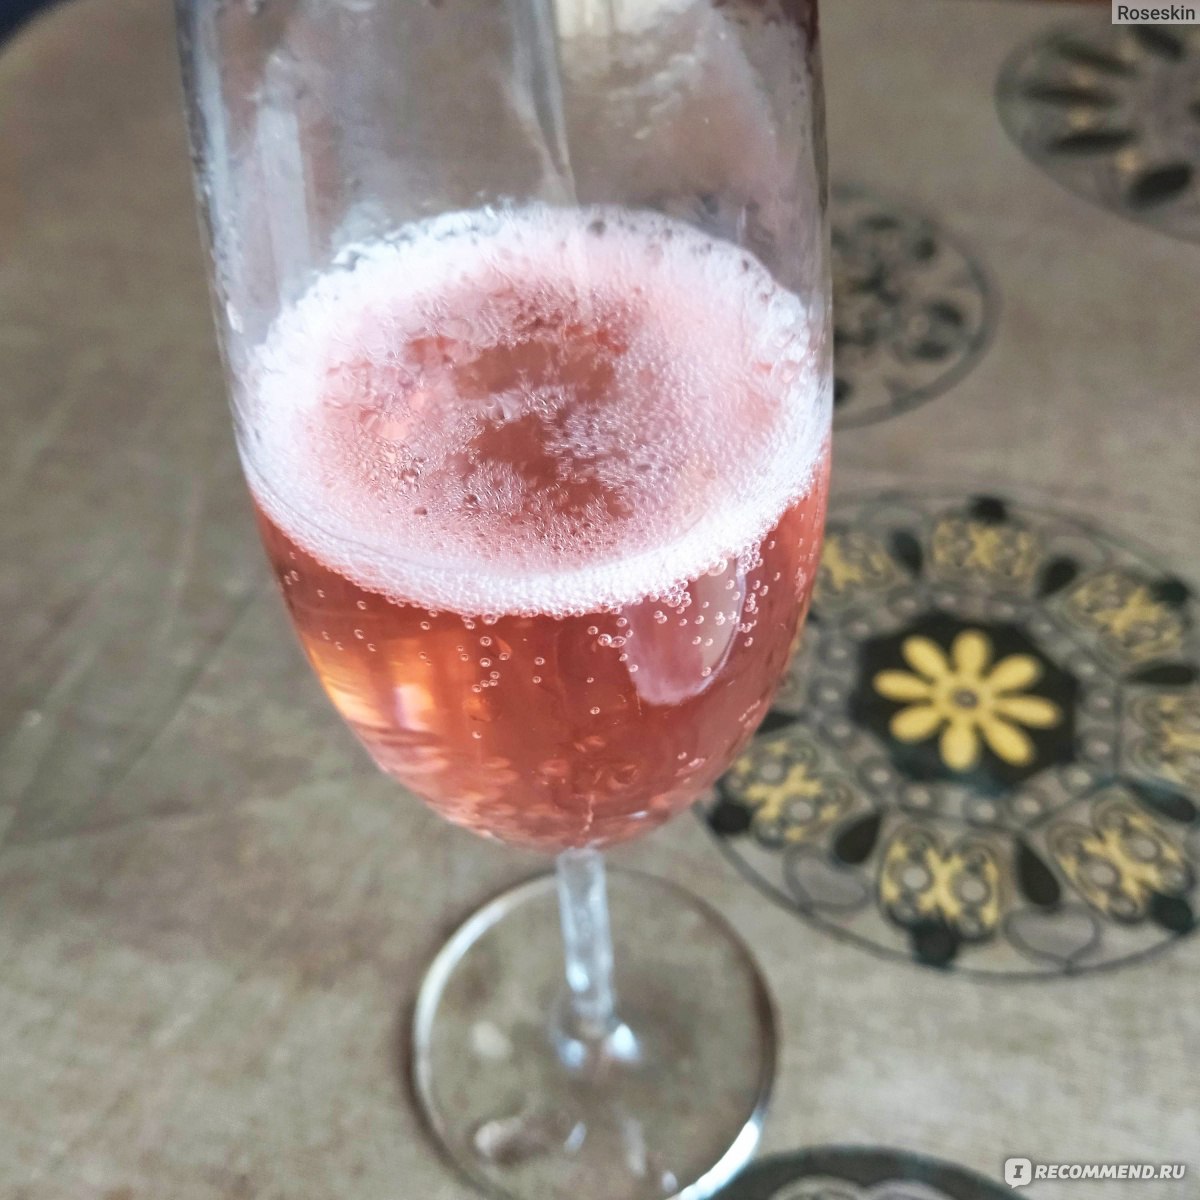 Напиток винный газированный Bosca Rose розовый полусладкий  фото